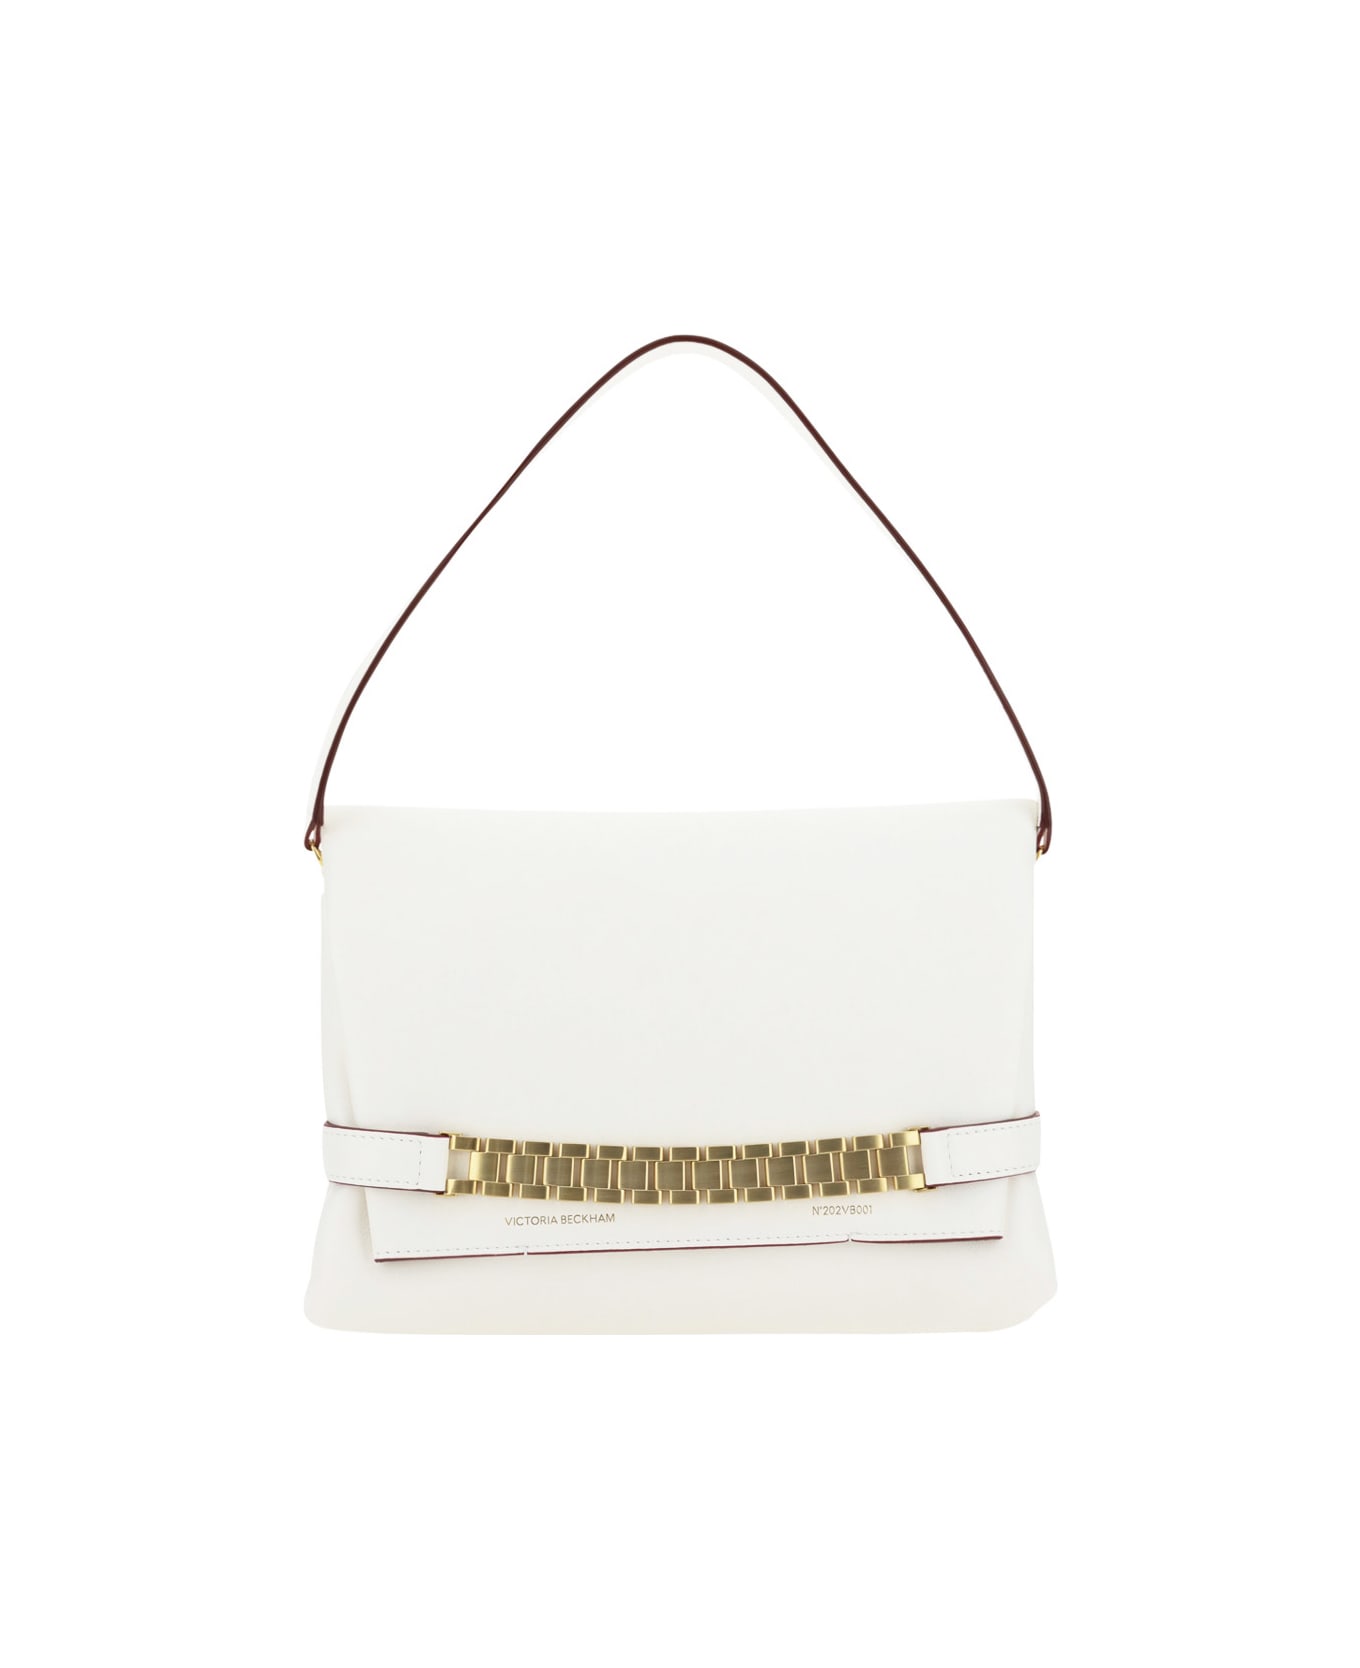 Victoria Beckham Shoulder Bag - White